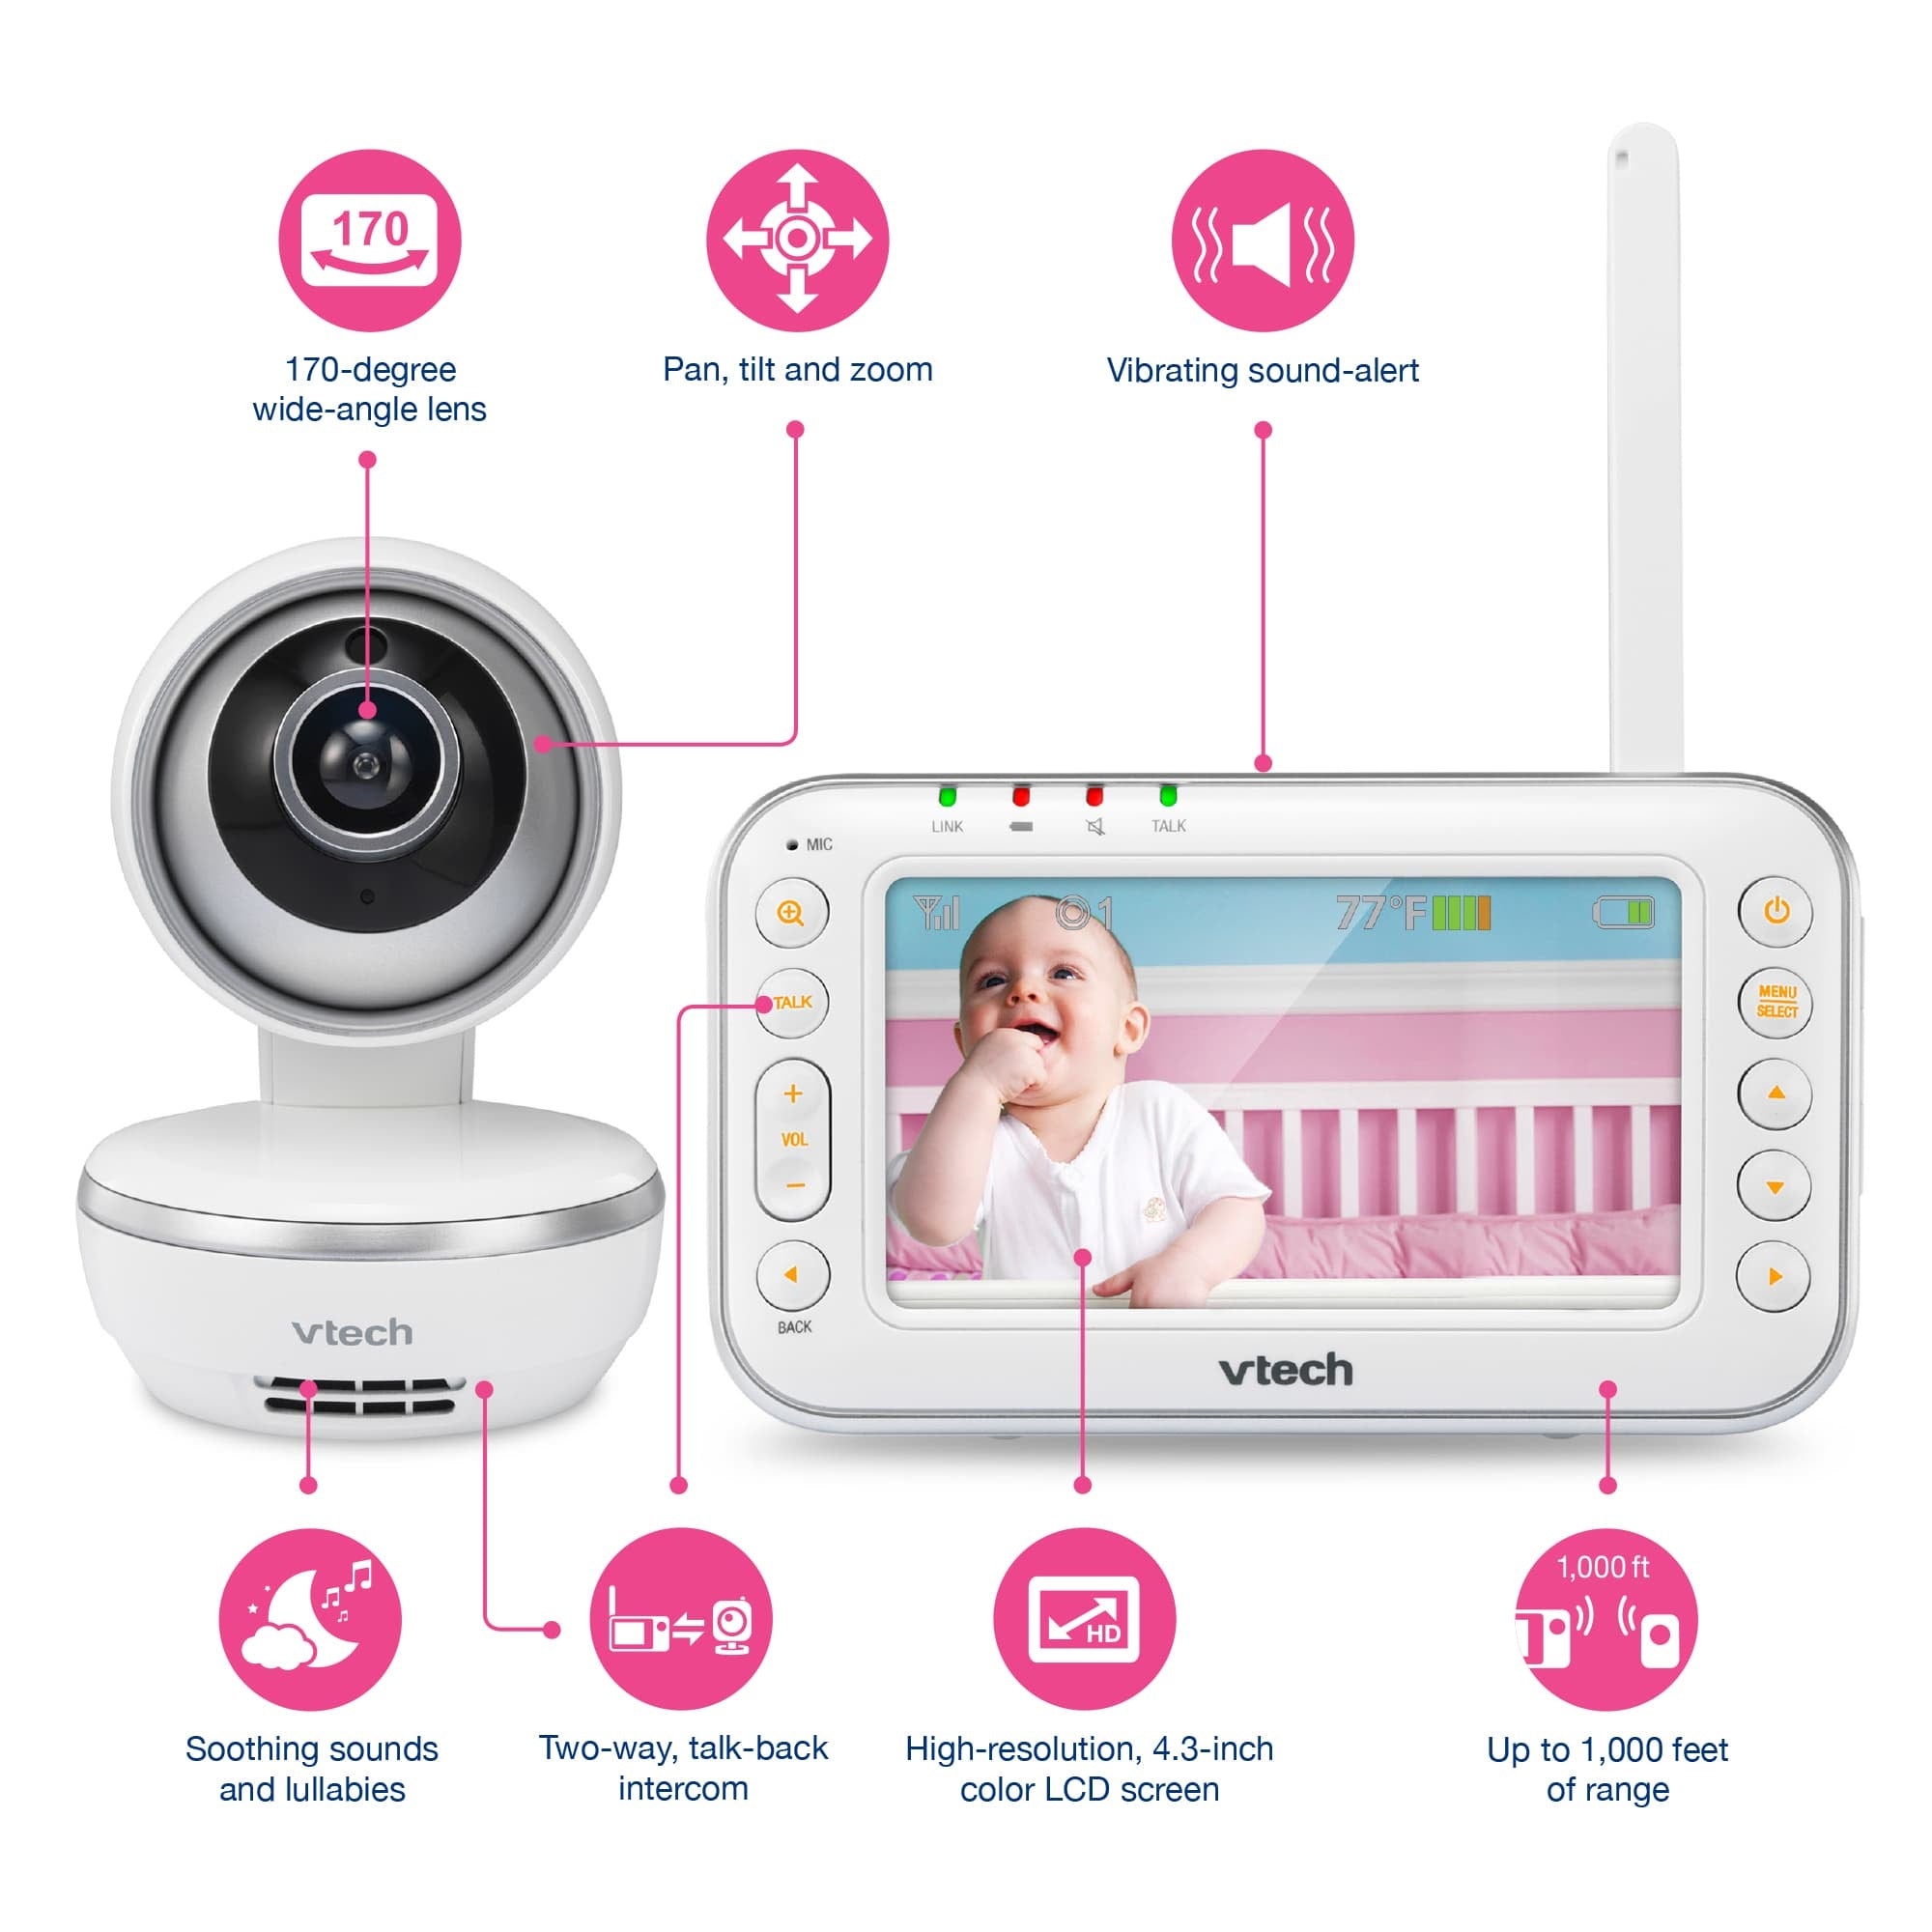 Vtech VM4261 Digital Video Baby Monitor with Pan & Tilt Camera